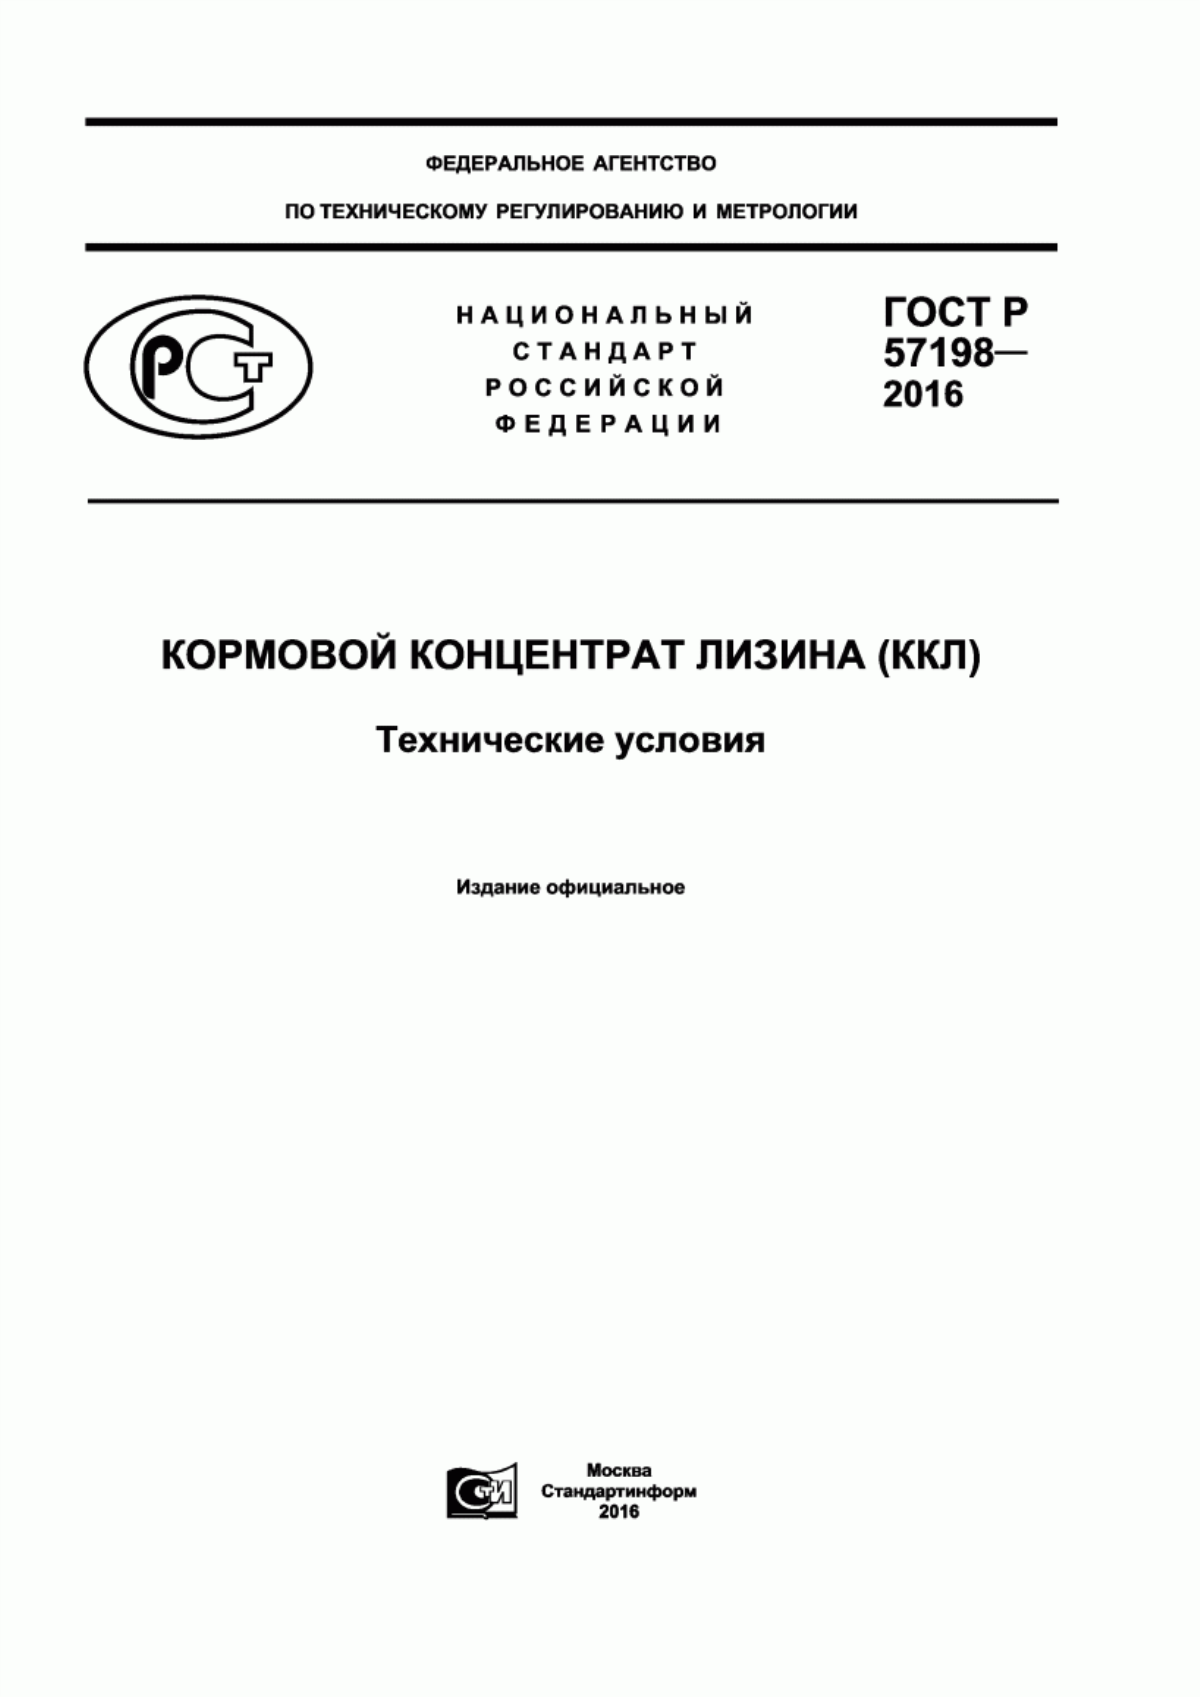 ГОСТ Р 57198-2016 Кормовой концентрат лизина (ККЛ). Технические условия